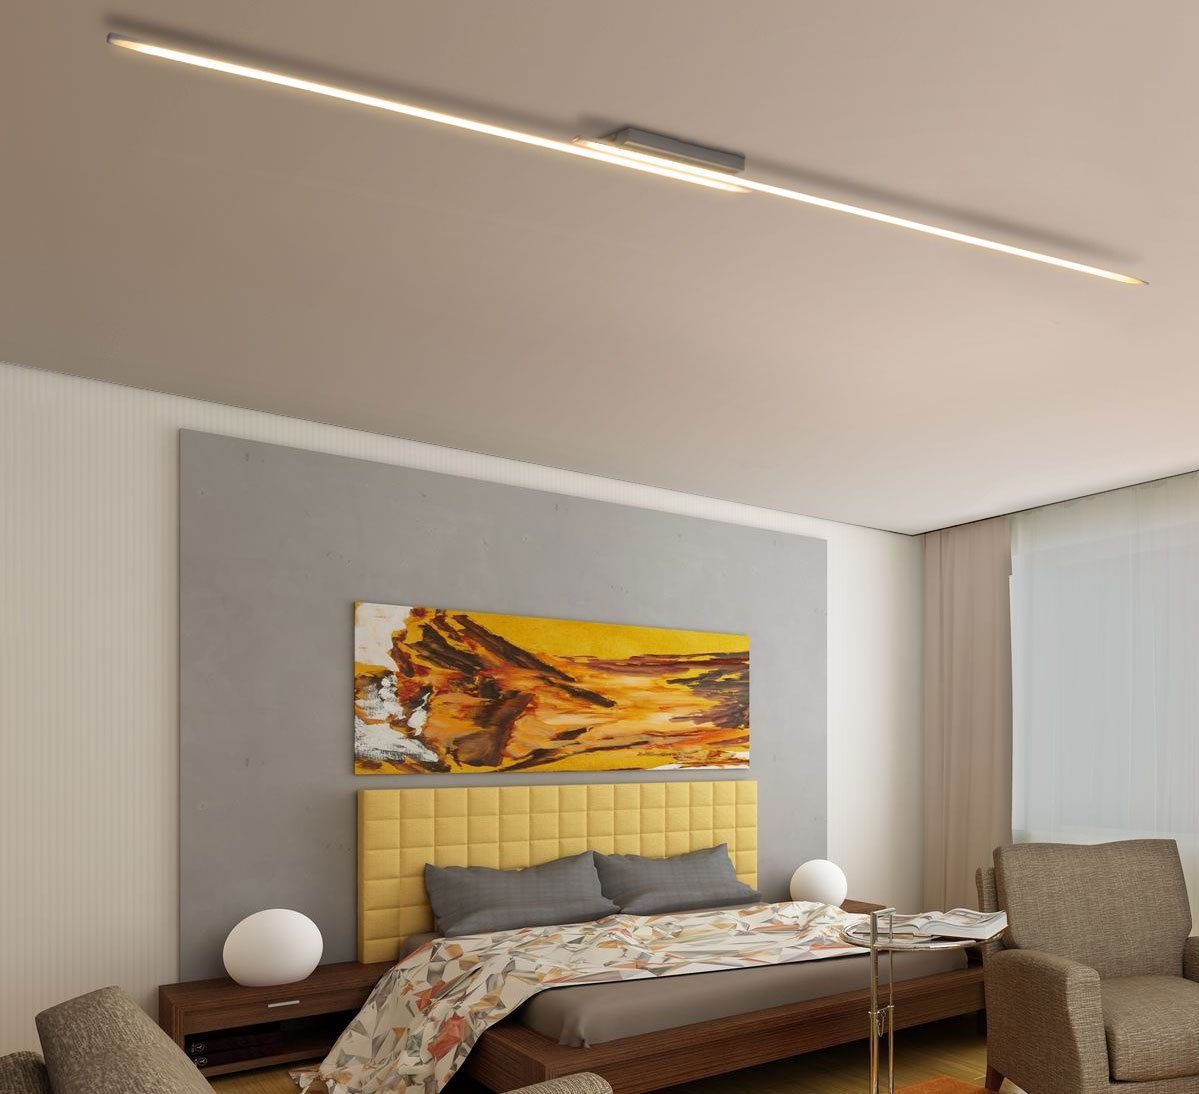 Lewima LED Deckenleuchte »DRENADA« XXXL Deckenlampe groß 230cm 24W, Design  lang Alu gebürstet Chrom dimmbar, Warmweiß / Kaltweiß einstellbar, mit  Fernbedienung und Speicherfunktion, ideal für Wohnzimmer Schlafzimmer | Deckenlampen